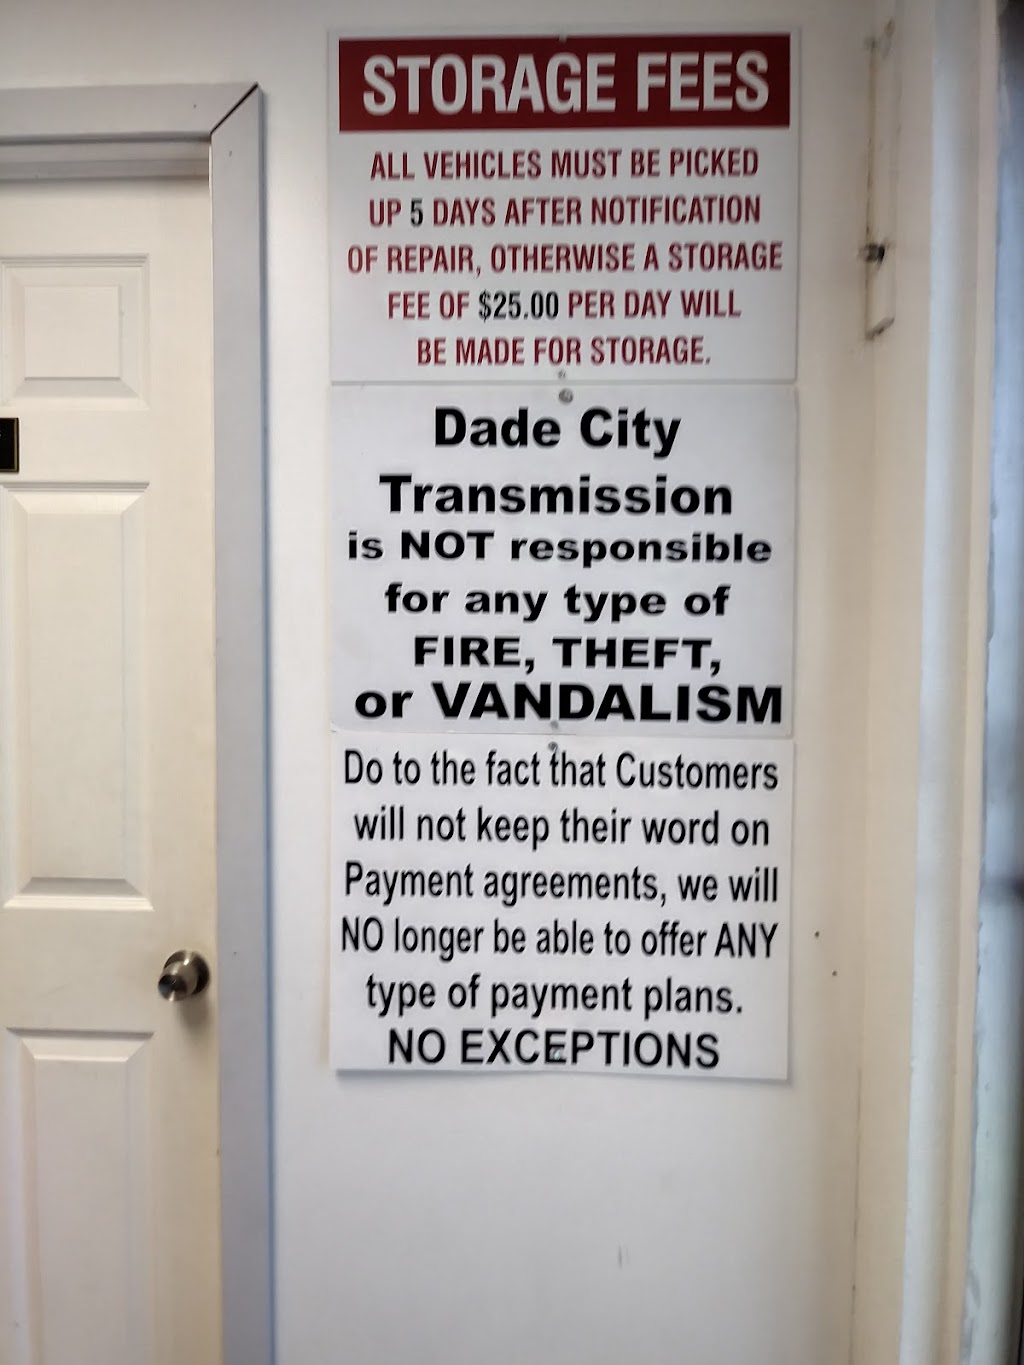 Dade City Transmission | 15526 US-301, Dade City, FL 33523, USA | Phone: (352) 518-0002